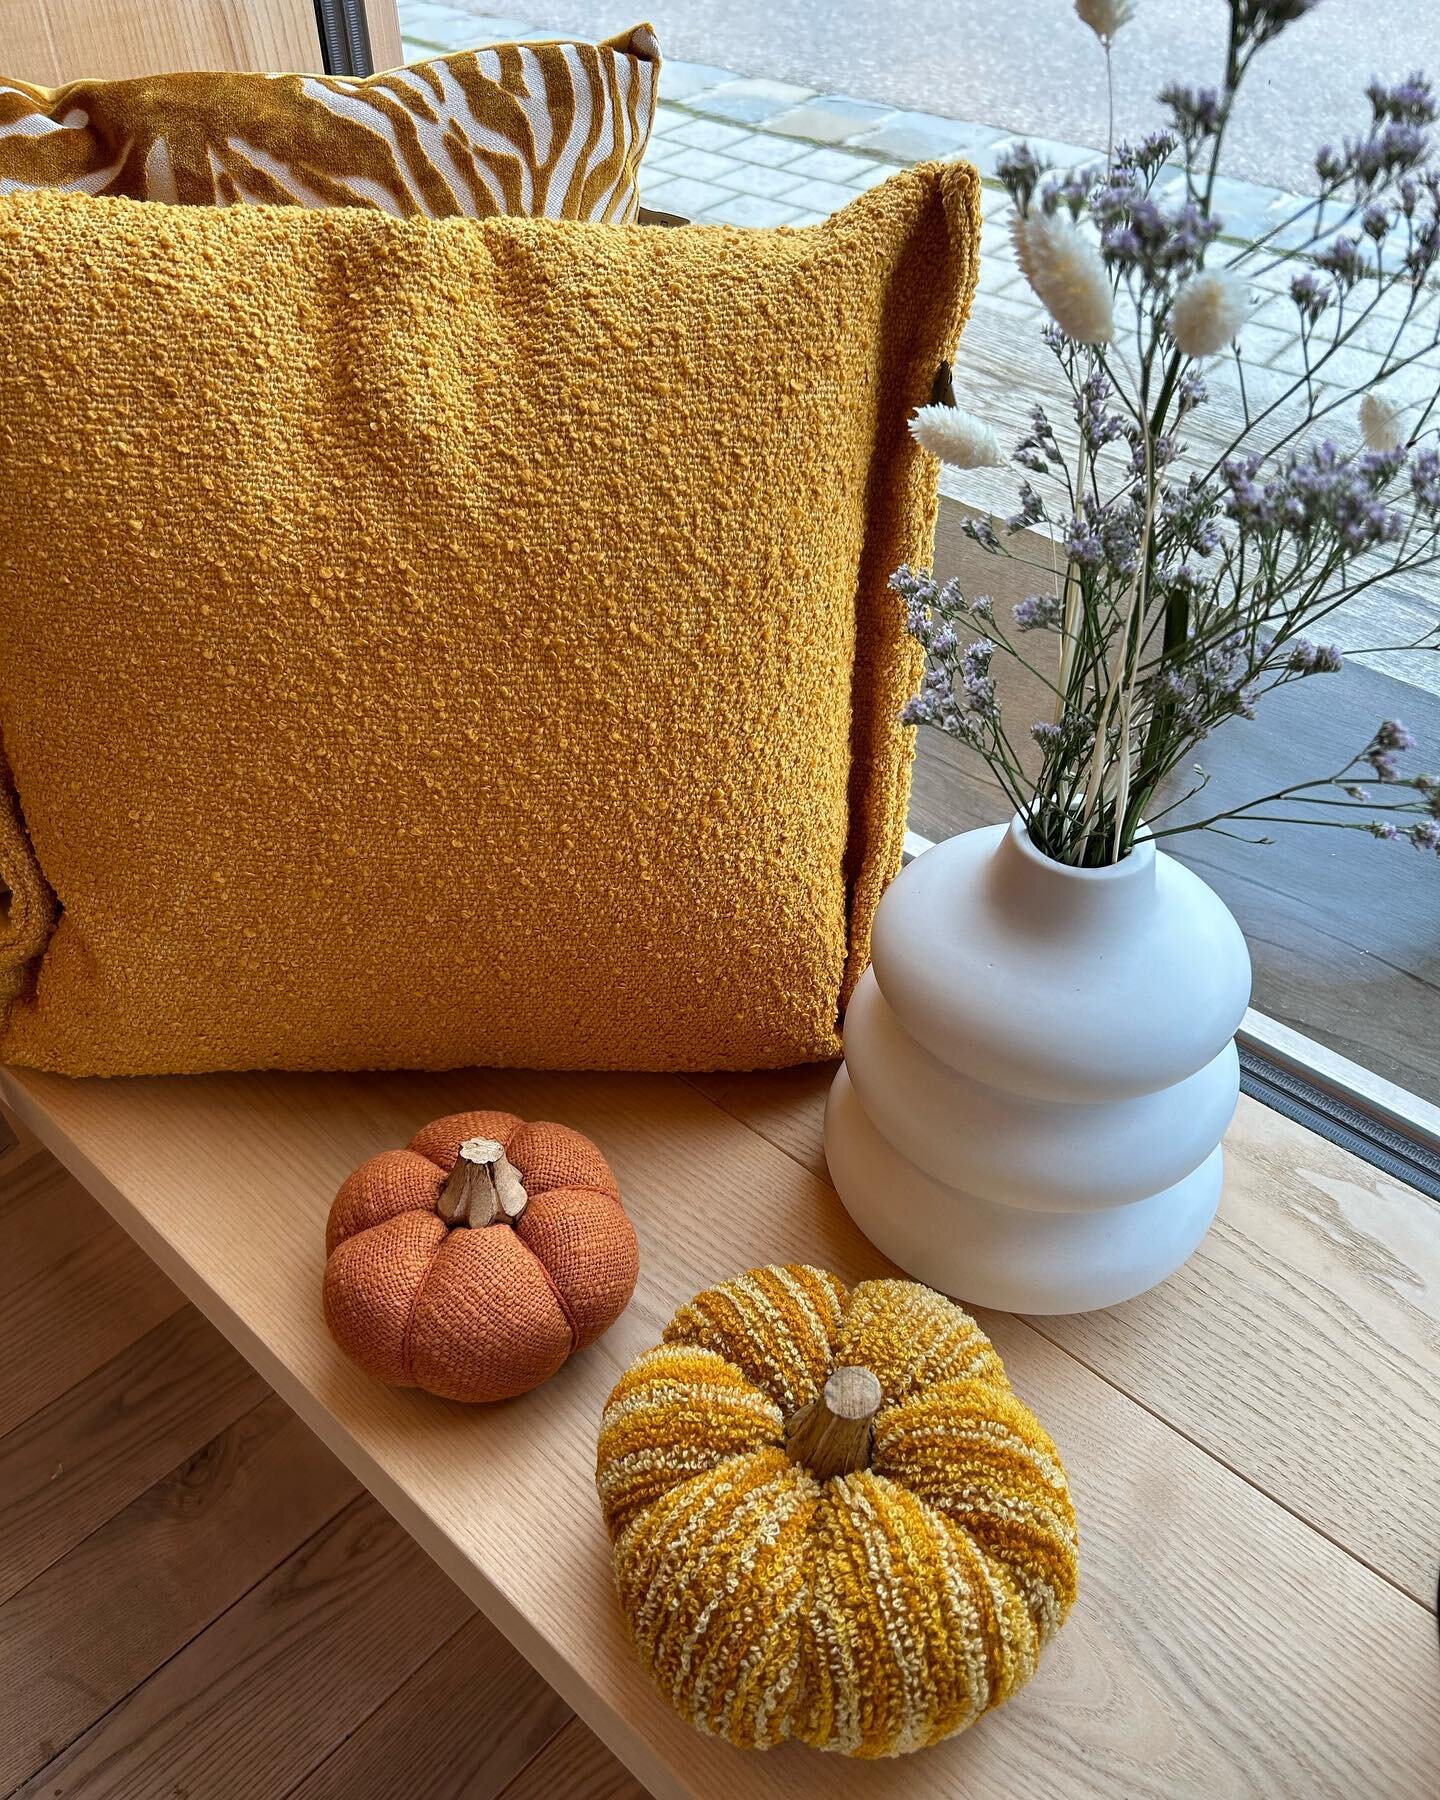 der Herbst schleicht sich an 🍂 

#cozyhome #homedecor #interiordesign #interior #autumn #pumpkin #gem&uuml;tlicheszuhause #plant #plantlover #blumenliebe #herbst #herbstdeko #k&uuml;rbisdeko #k&uuml;rbis